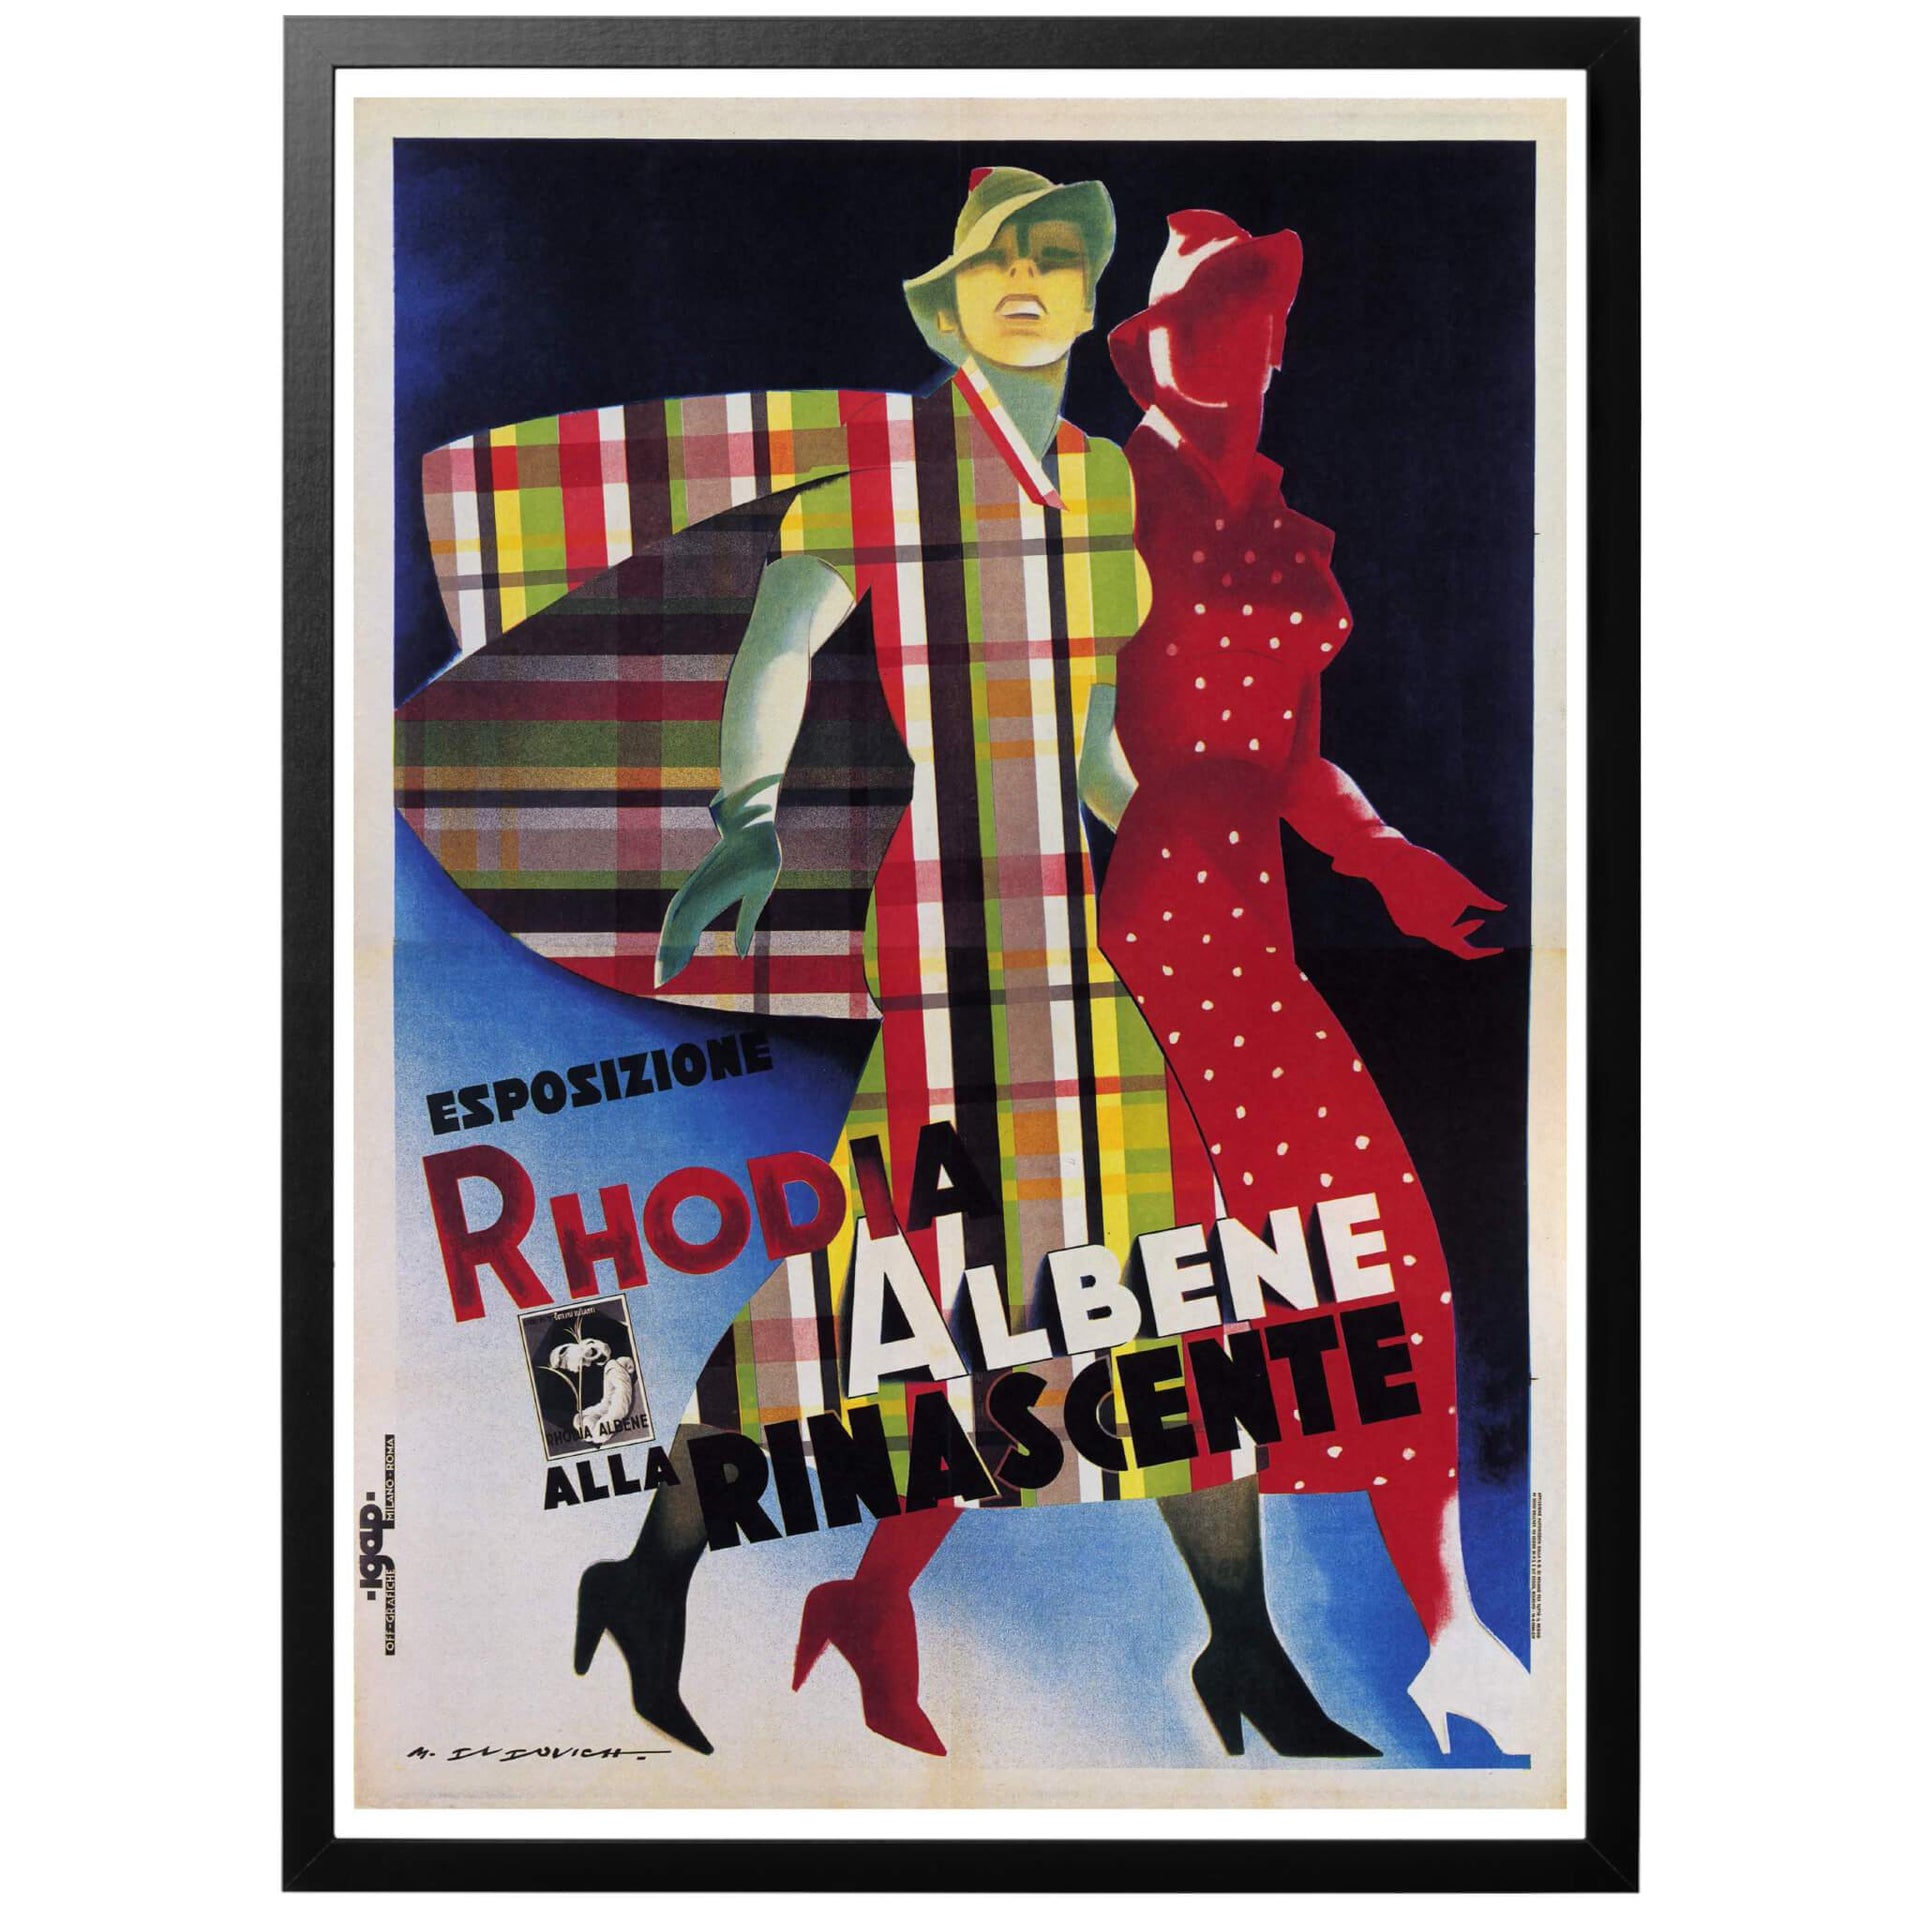 Esposizione Rhodia Albene alla Rinascente - Utställning av Rhodia Albene på Rinascente. Italiensk modeaffisch från 1936 - en väldigt elegant och snygg poster! Köp den hos World War Era!